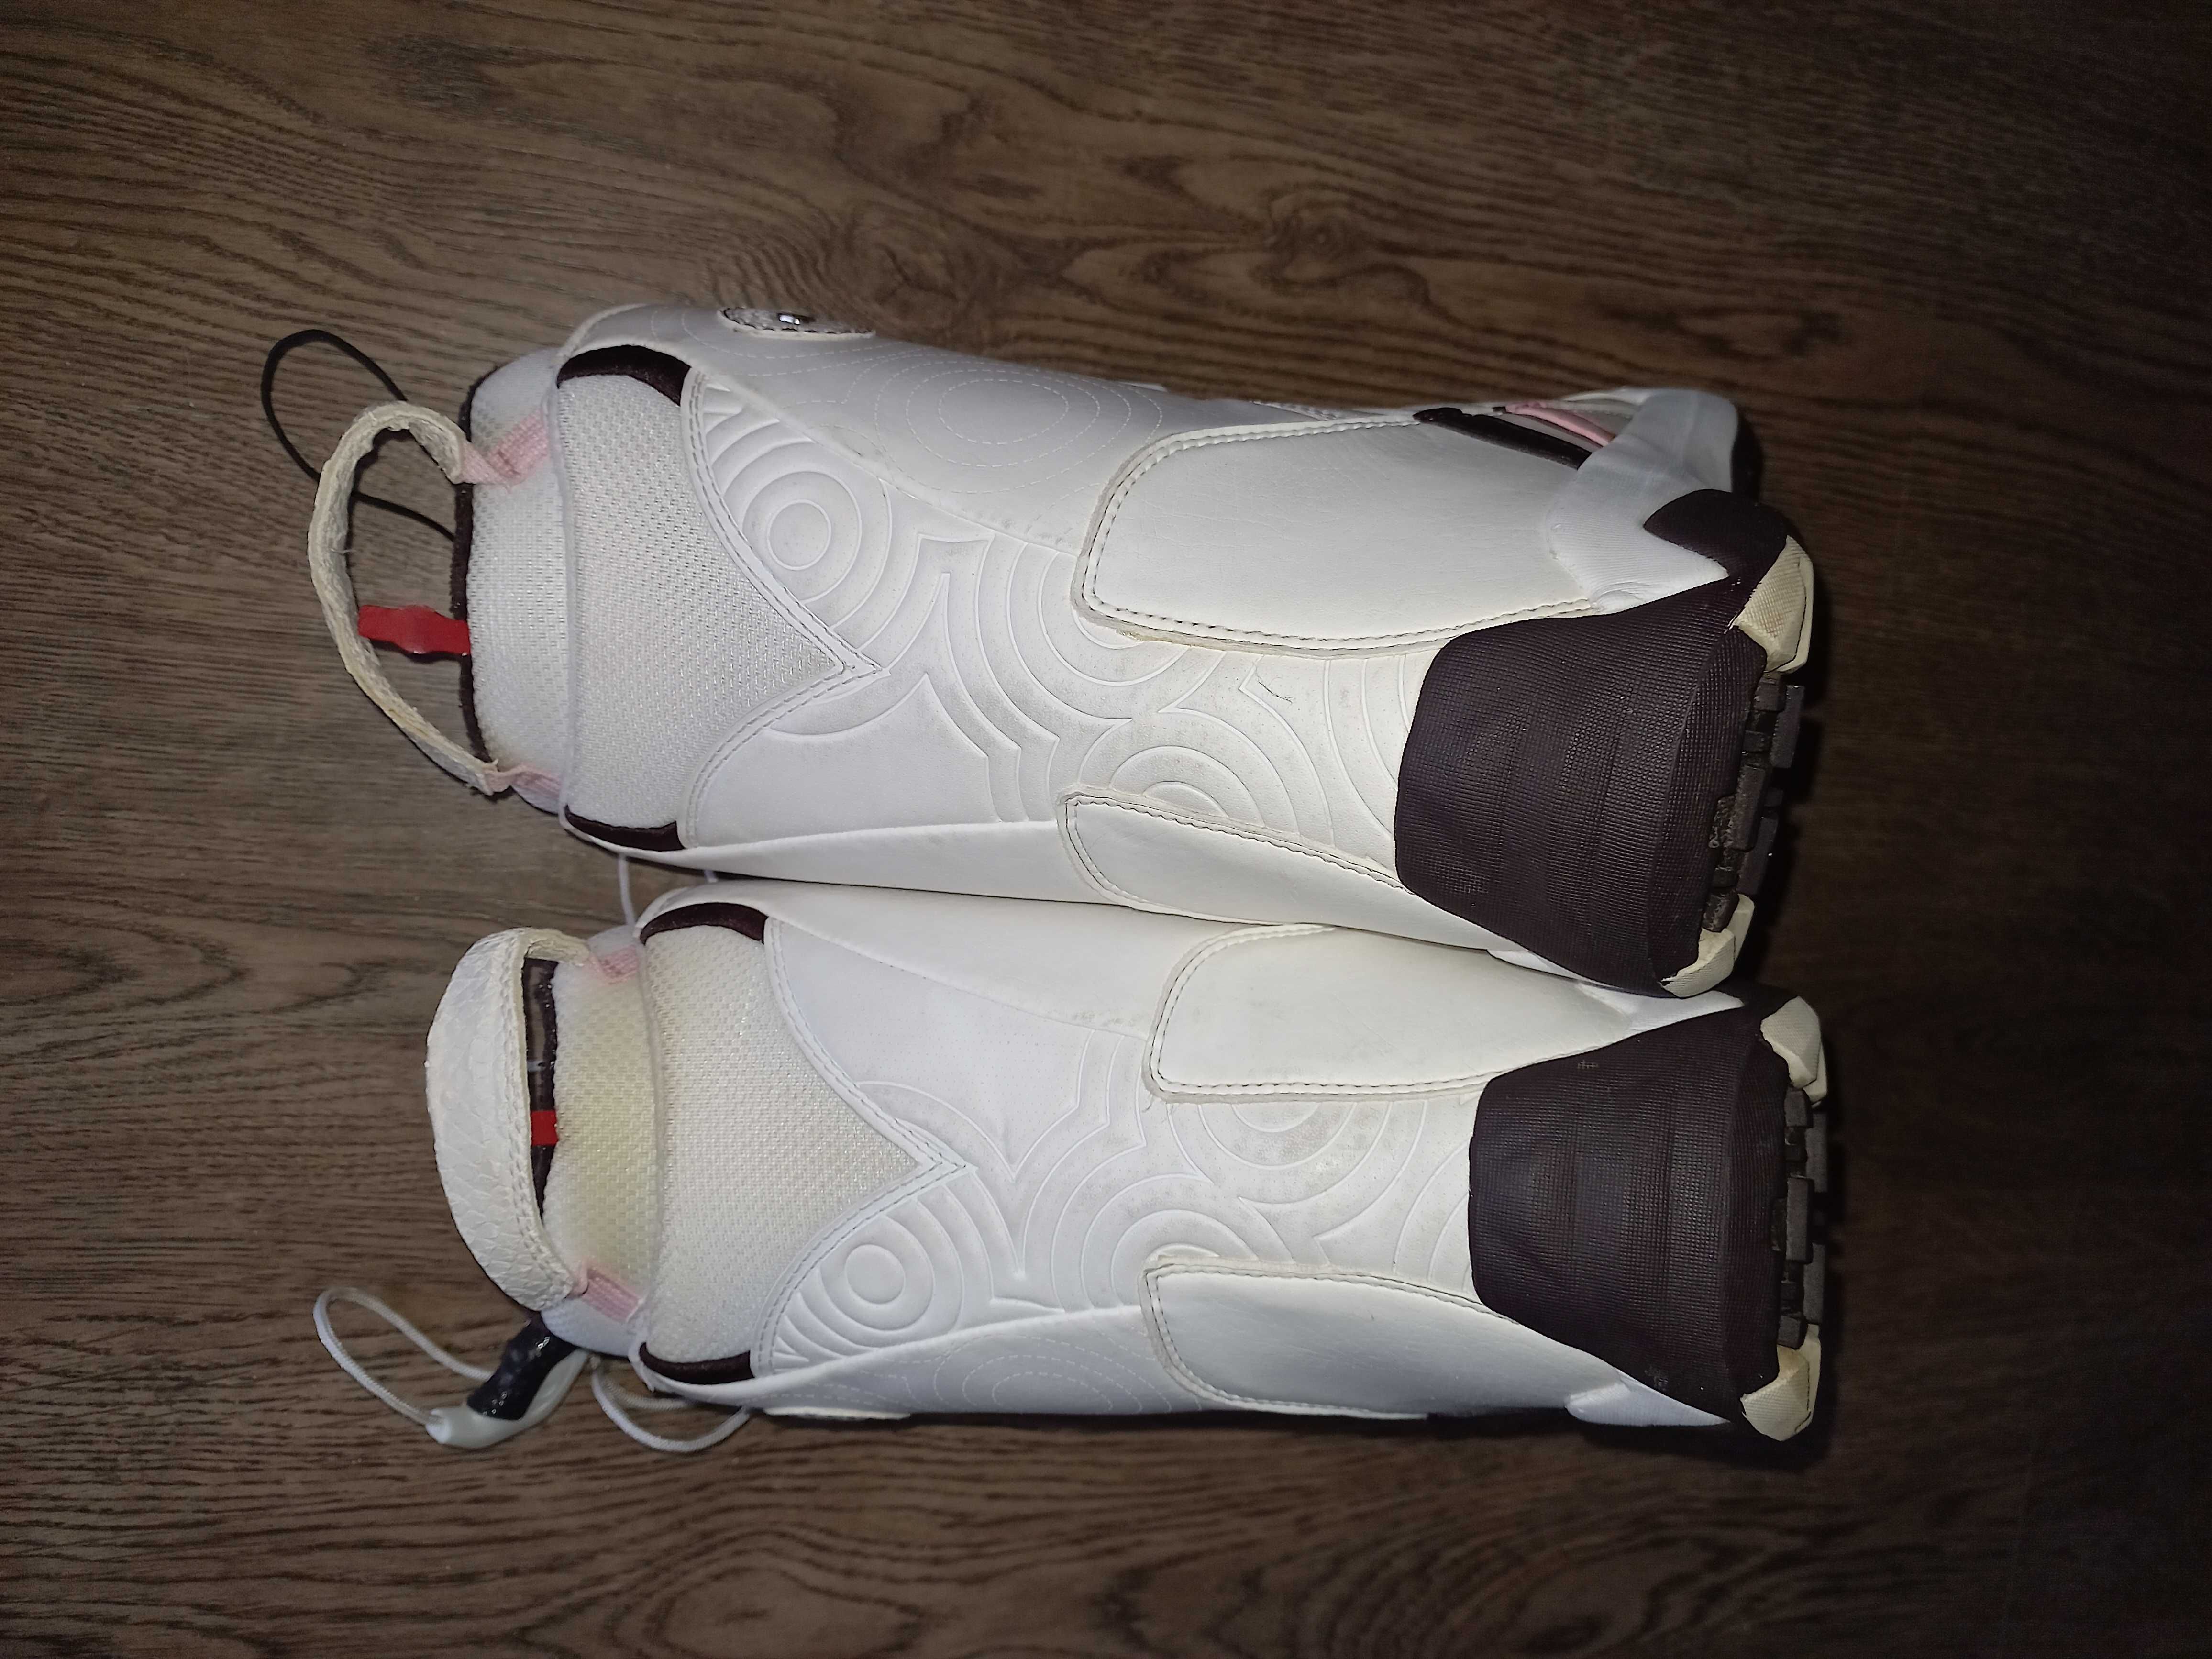 Buty snowboardowe Salomon rozmiar 38 (wkładka 23cm)